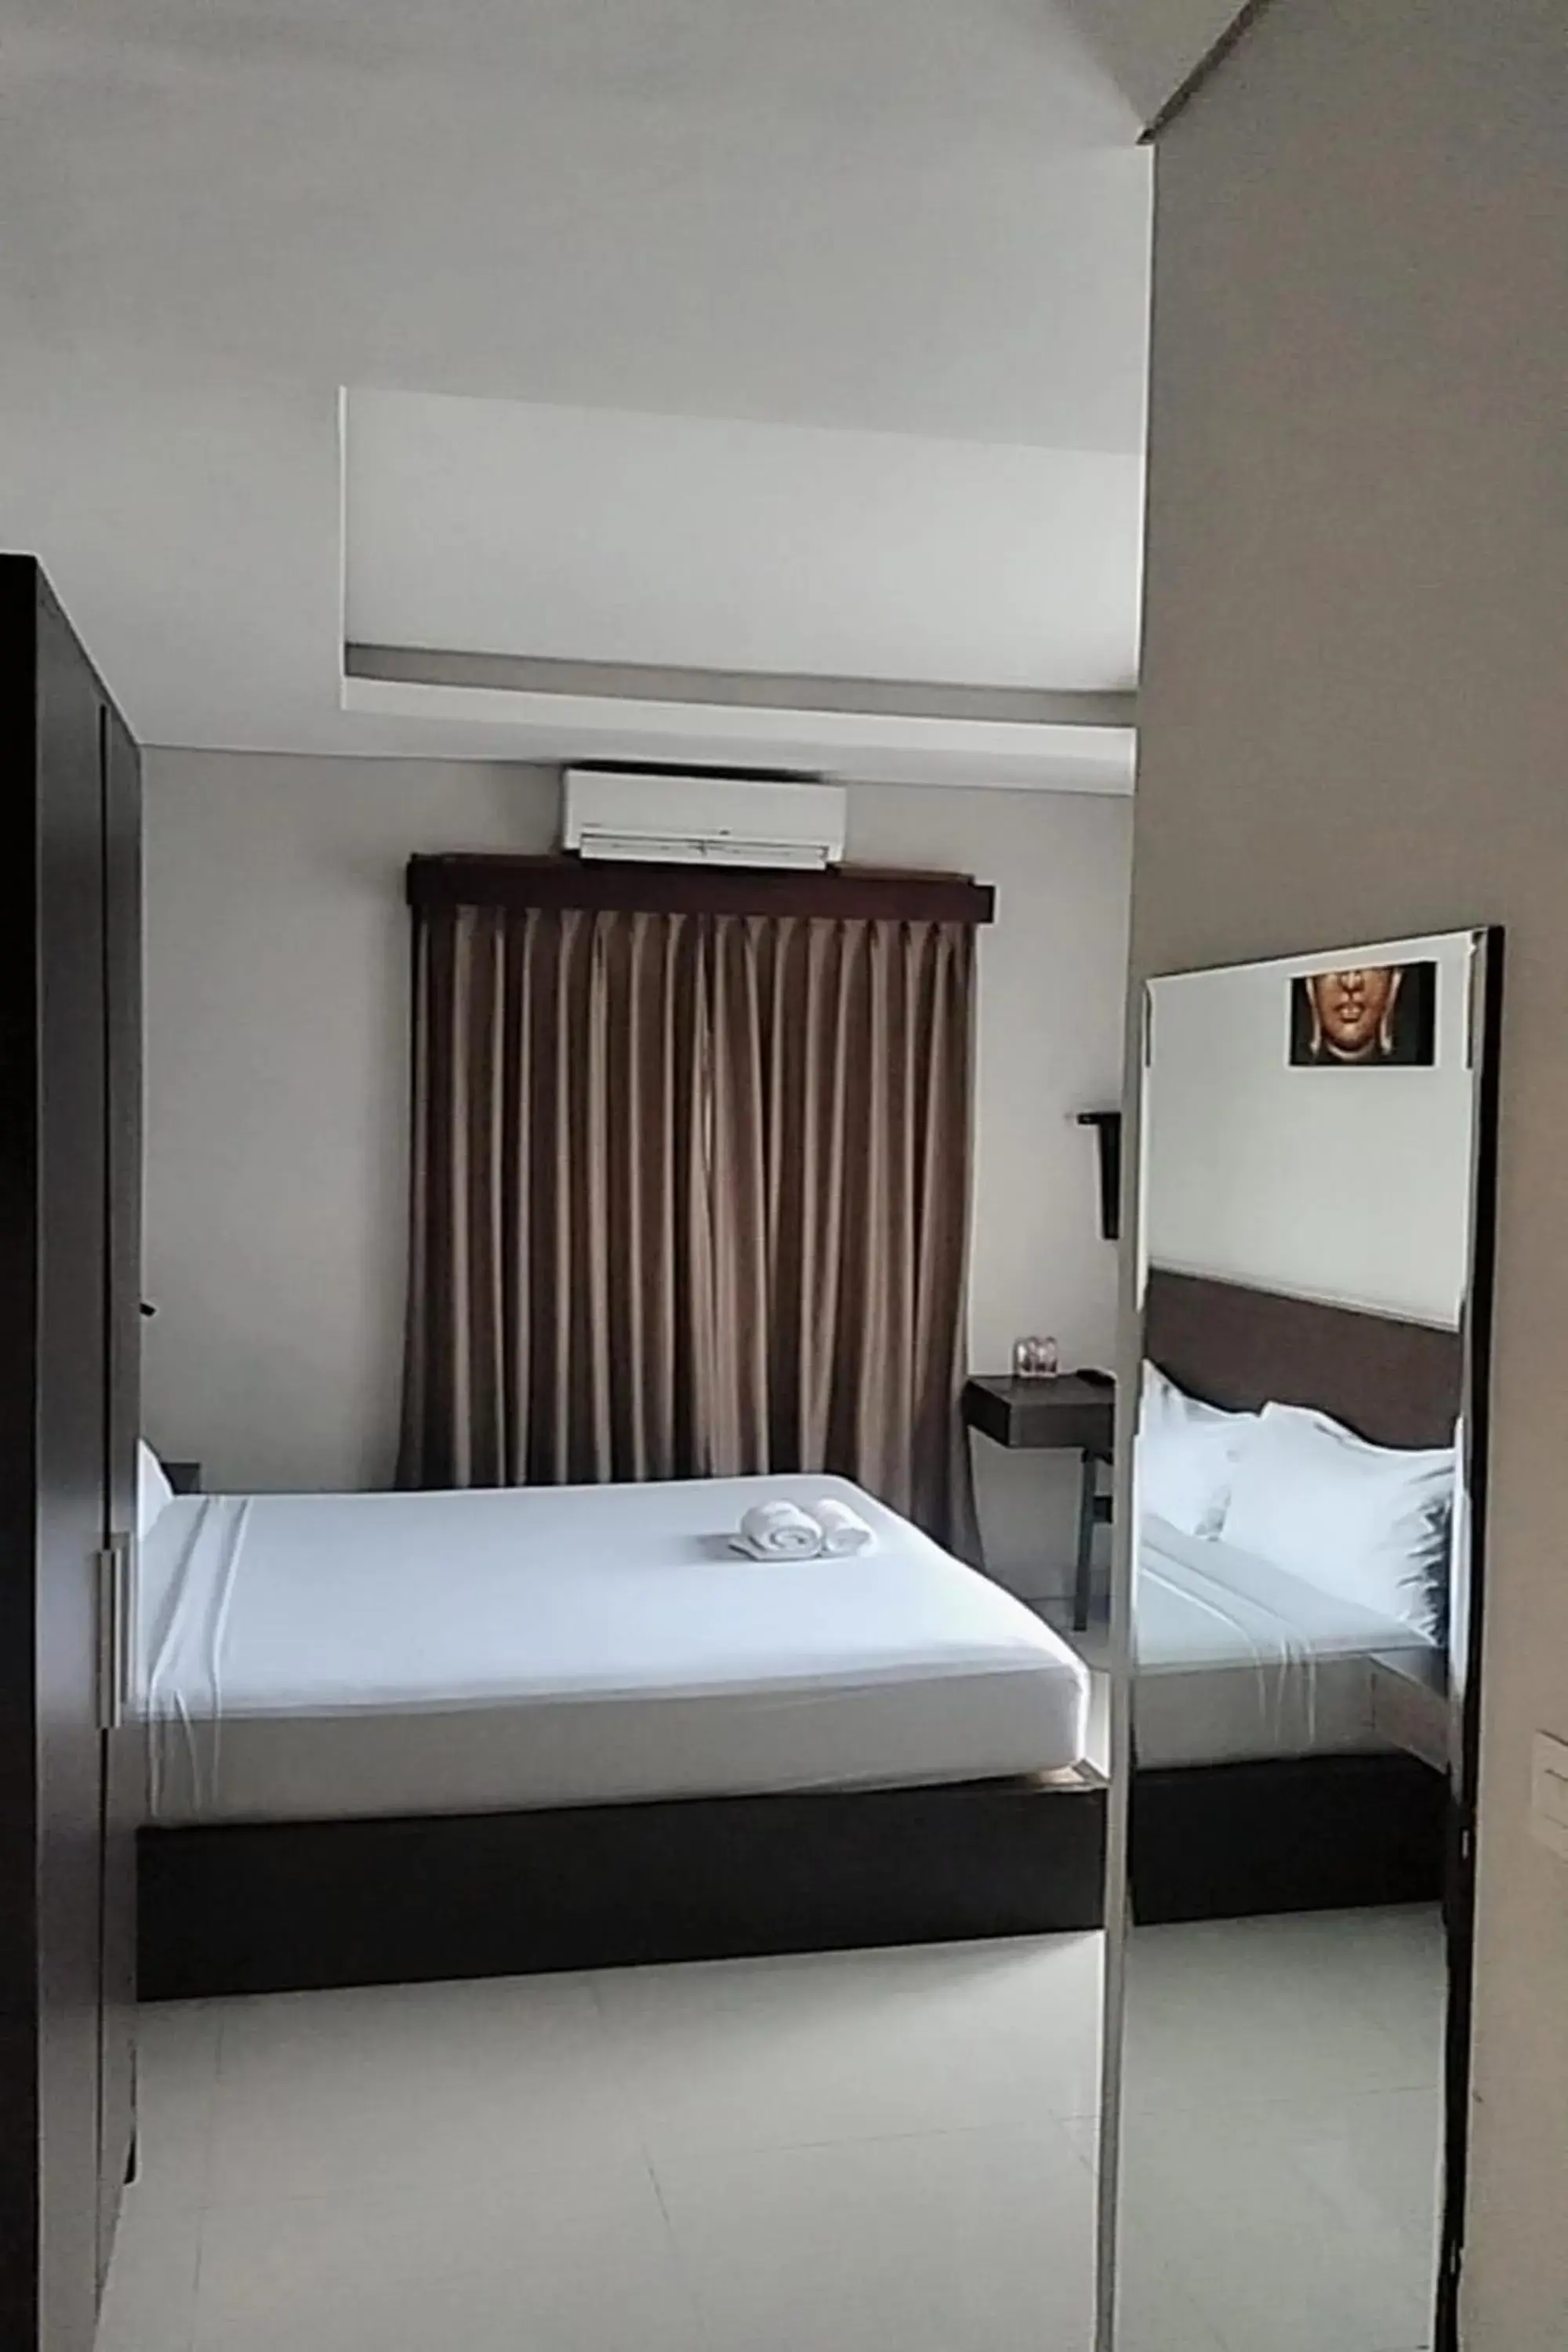 Bedroom, Bed in Akarsa Transit